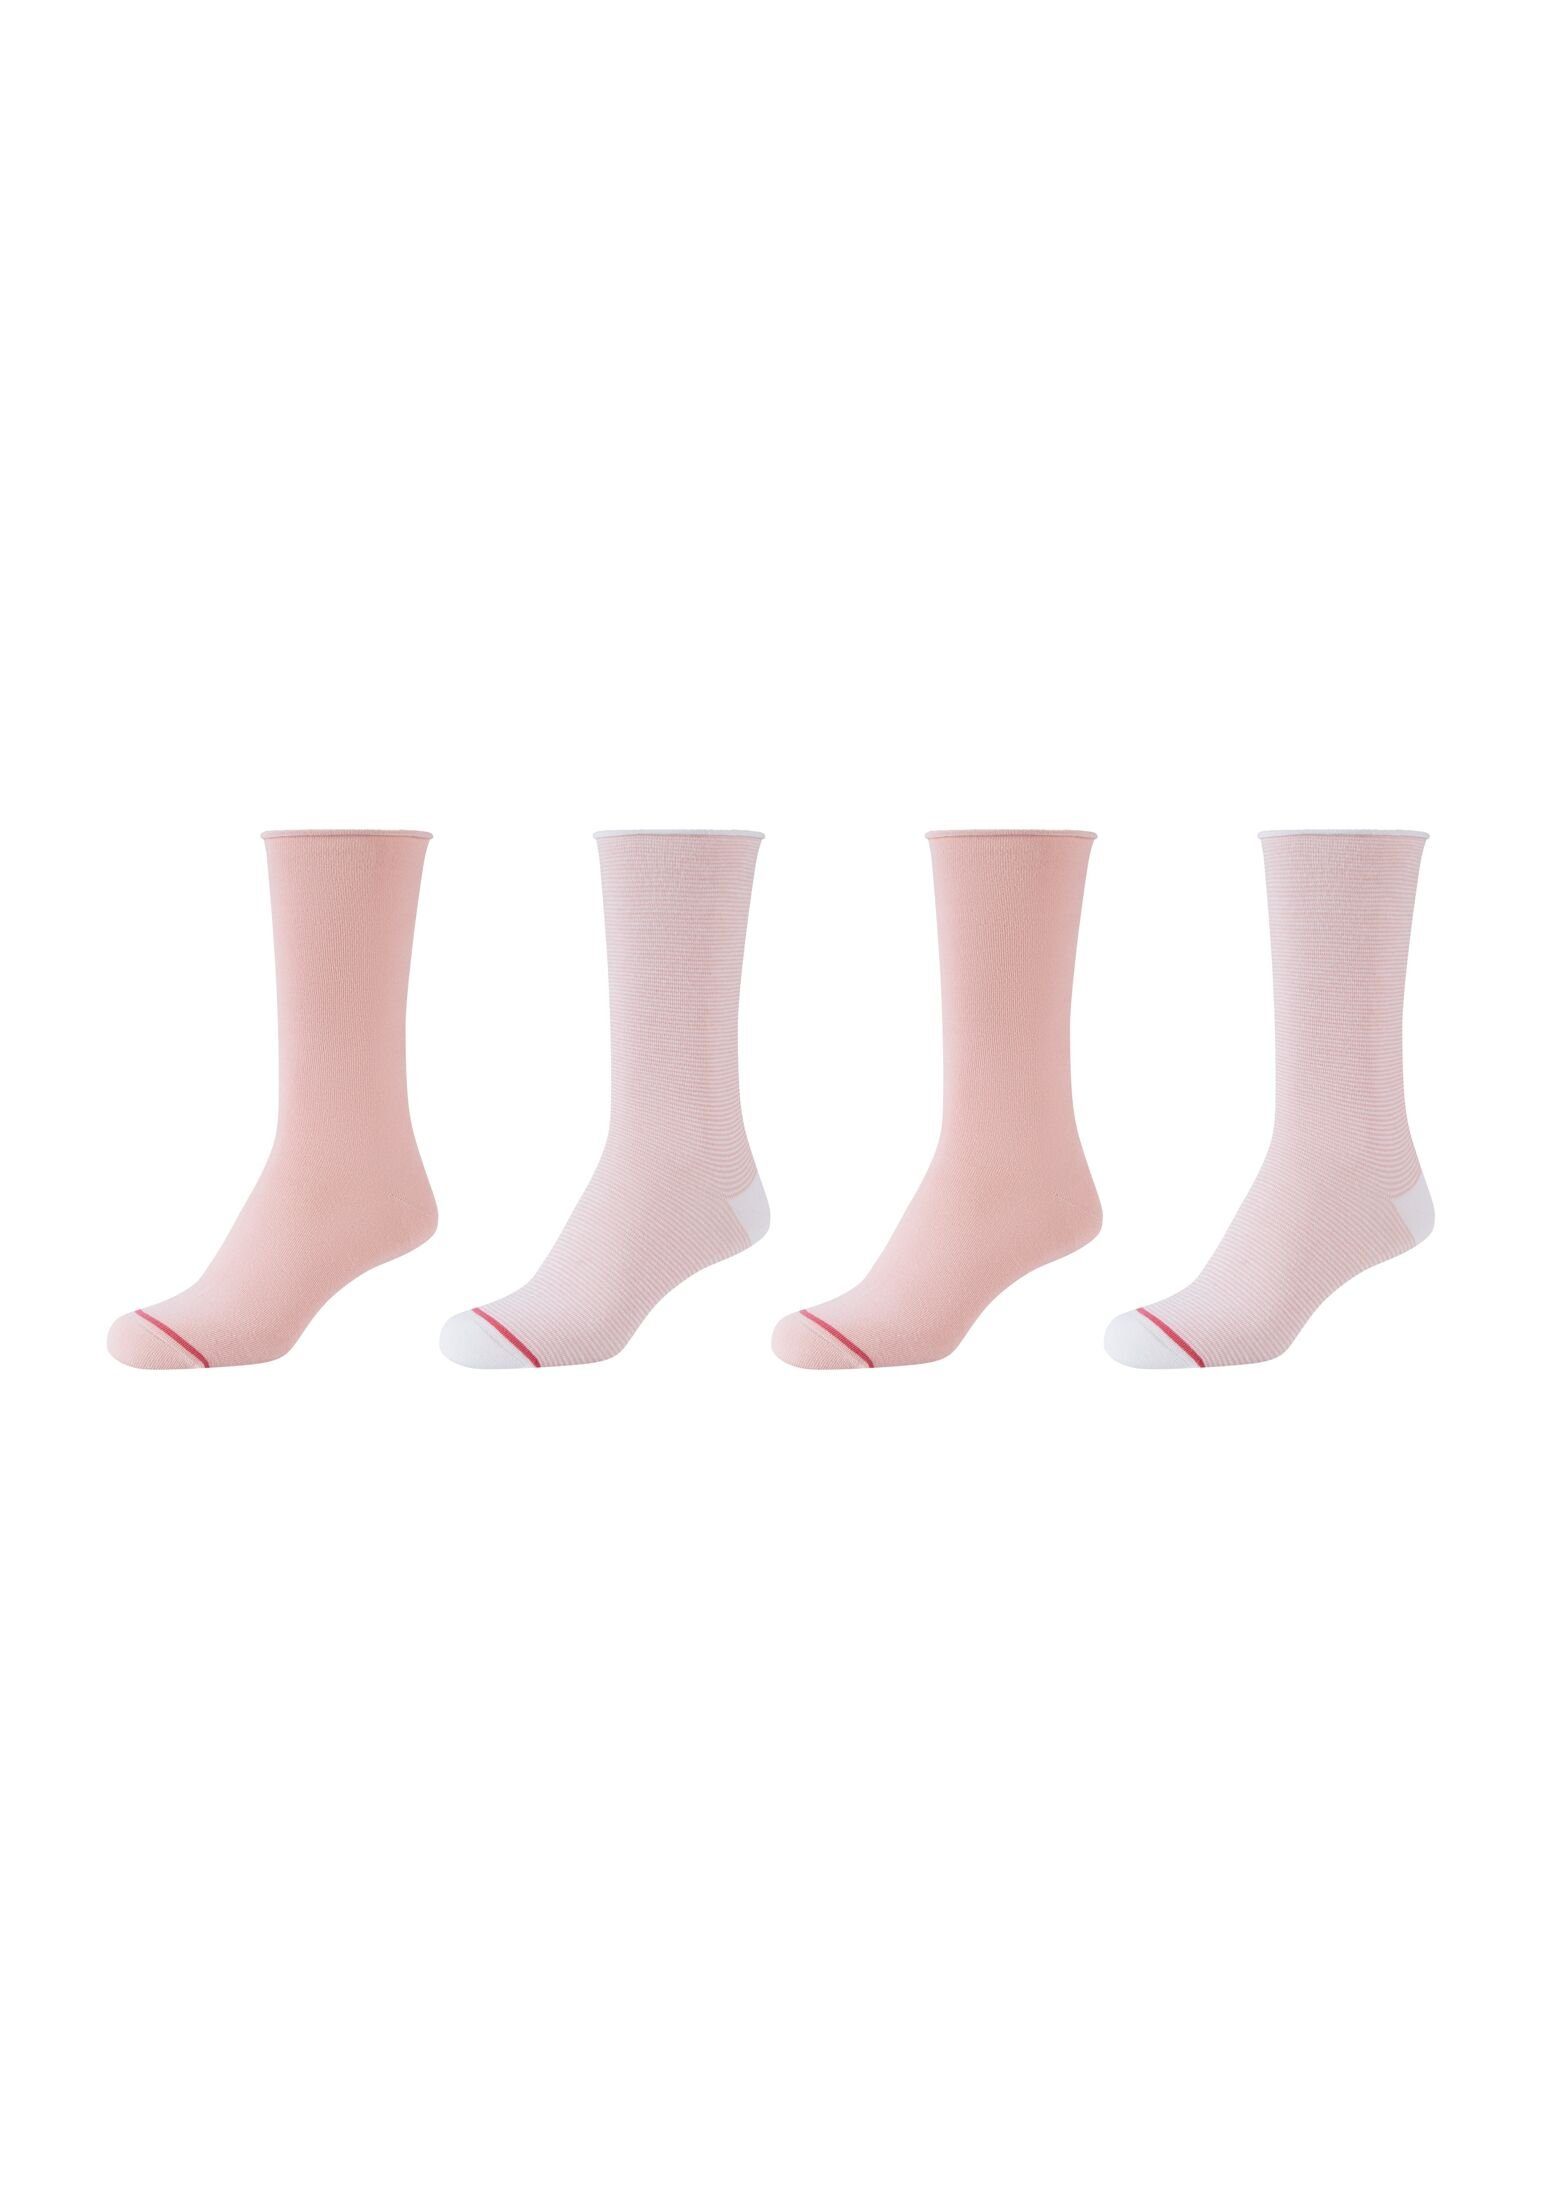 s.Oliver Socken Socken 4er Pack, Vielseitig: mit zartem Muster perfekt für  jede Gelegenheit